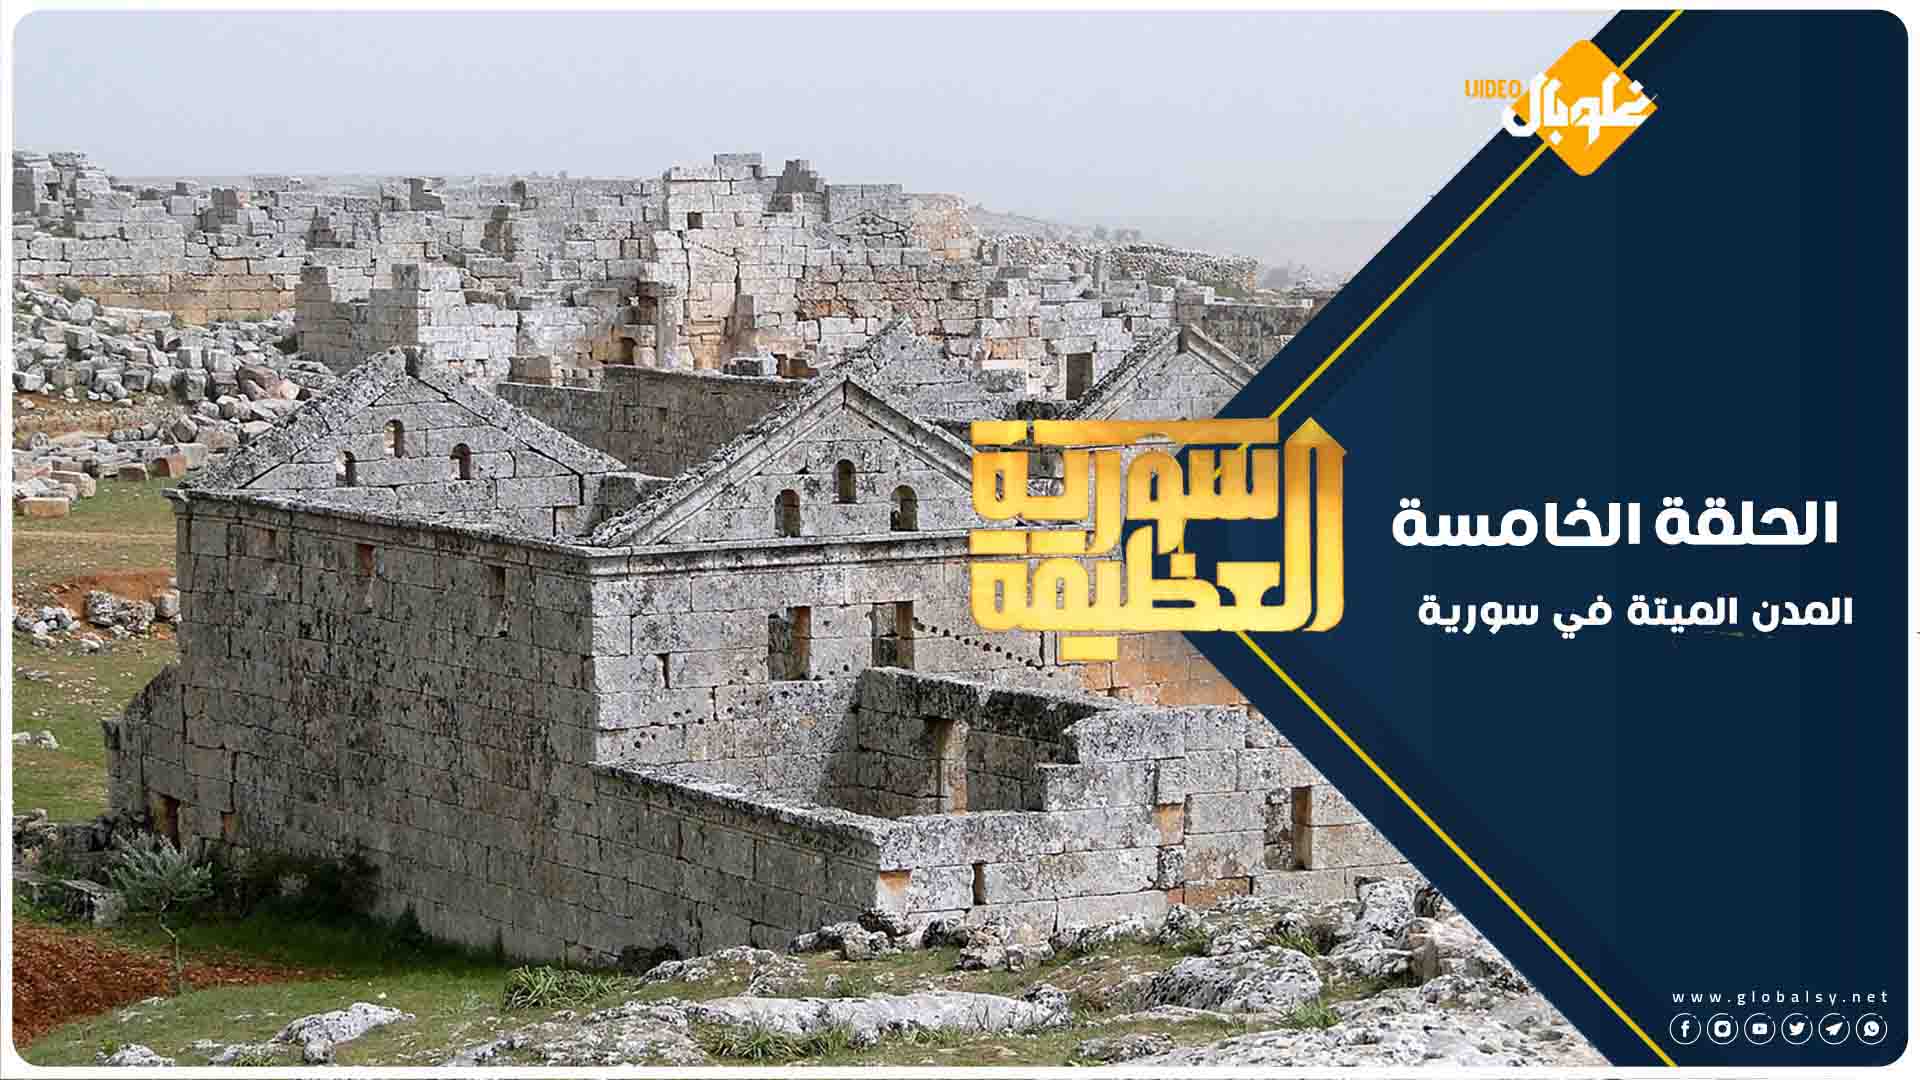 سورية العظيمة | الحلقة الخامسة: أكثر من 700 موقع أثري شمال سورية منسية وميتة، فما هي؟